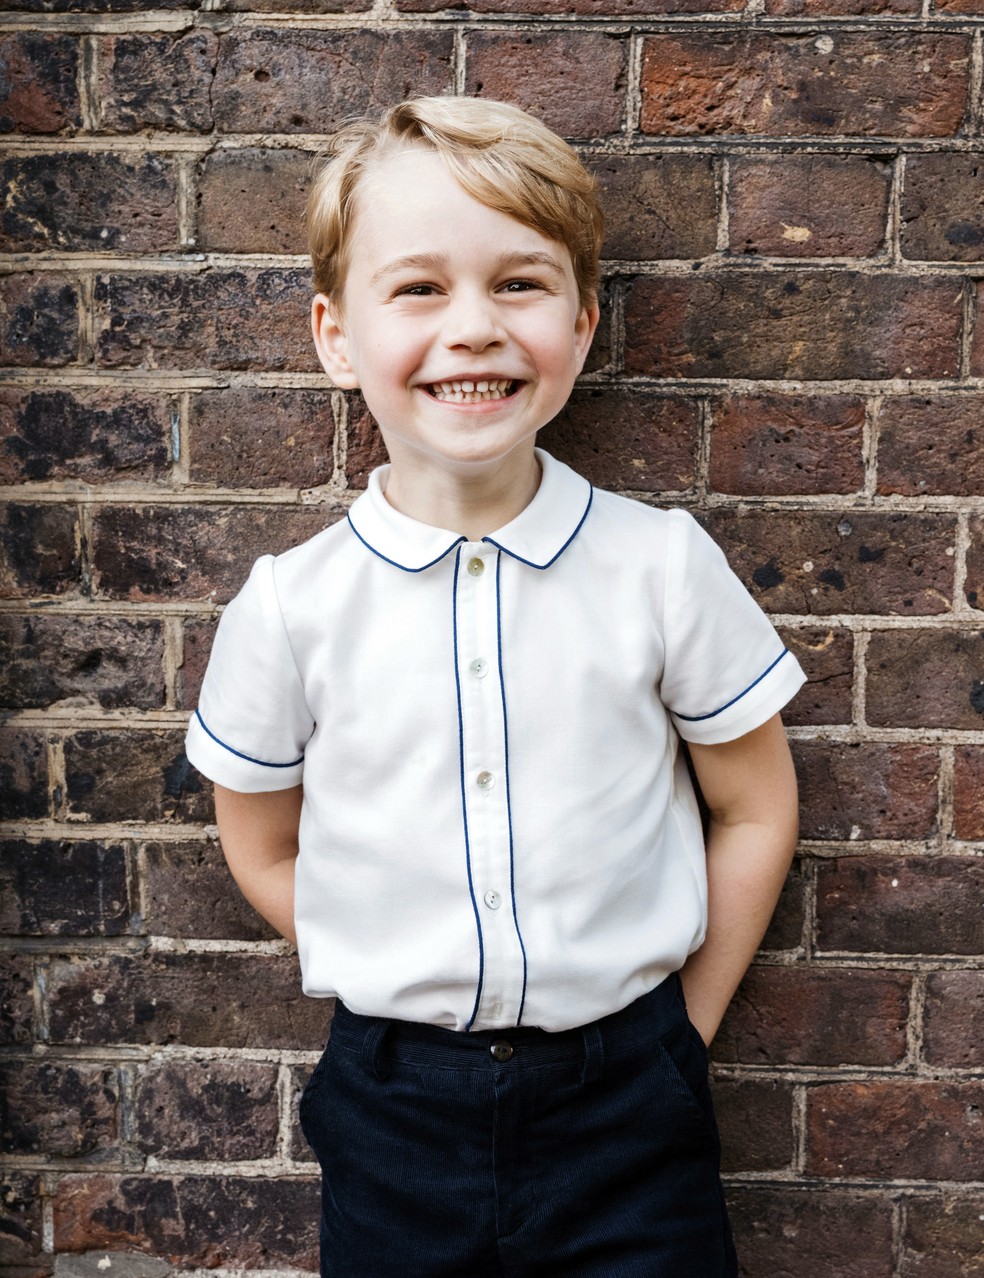 Príncipe George, em foto do dia 9 de julho tirada após o batizado do seu irmão mais novo, príncipe Louis, em Londres (Foto: Matt Porteous via AP)